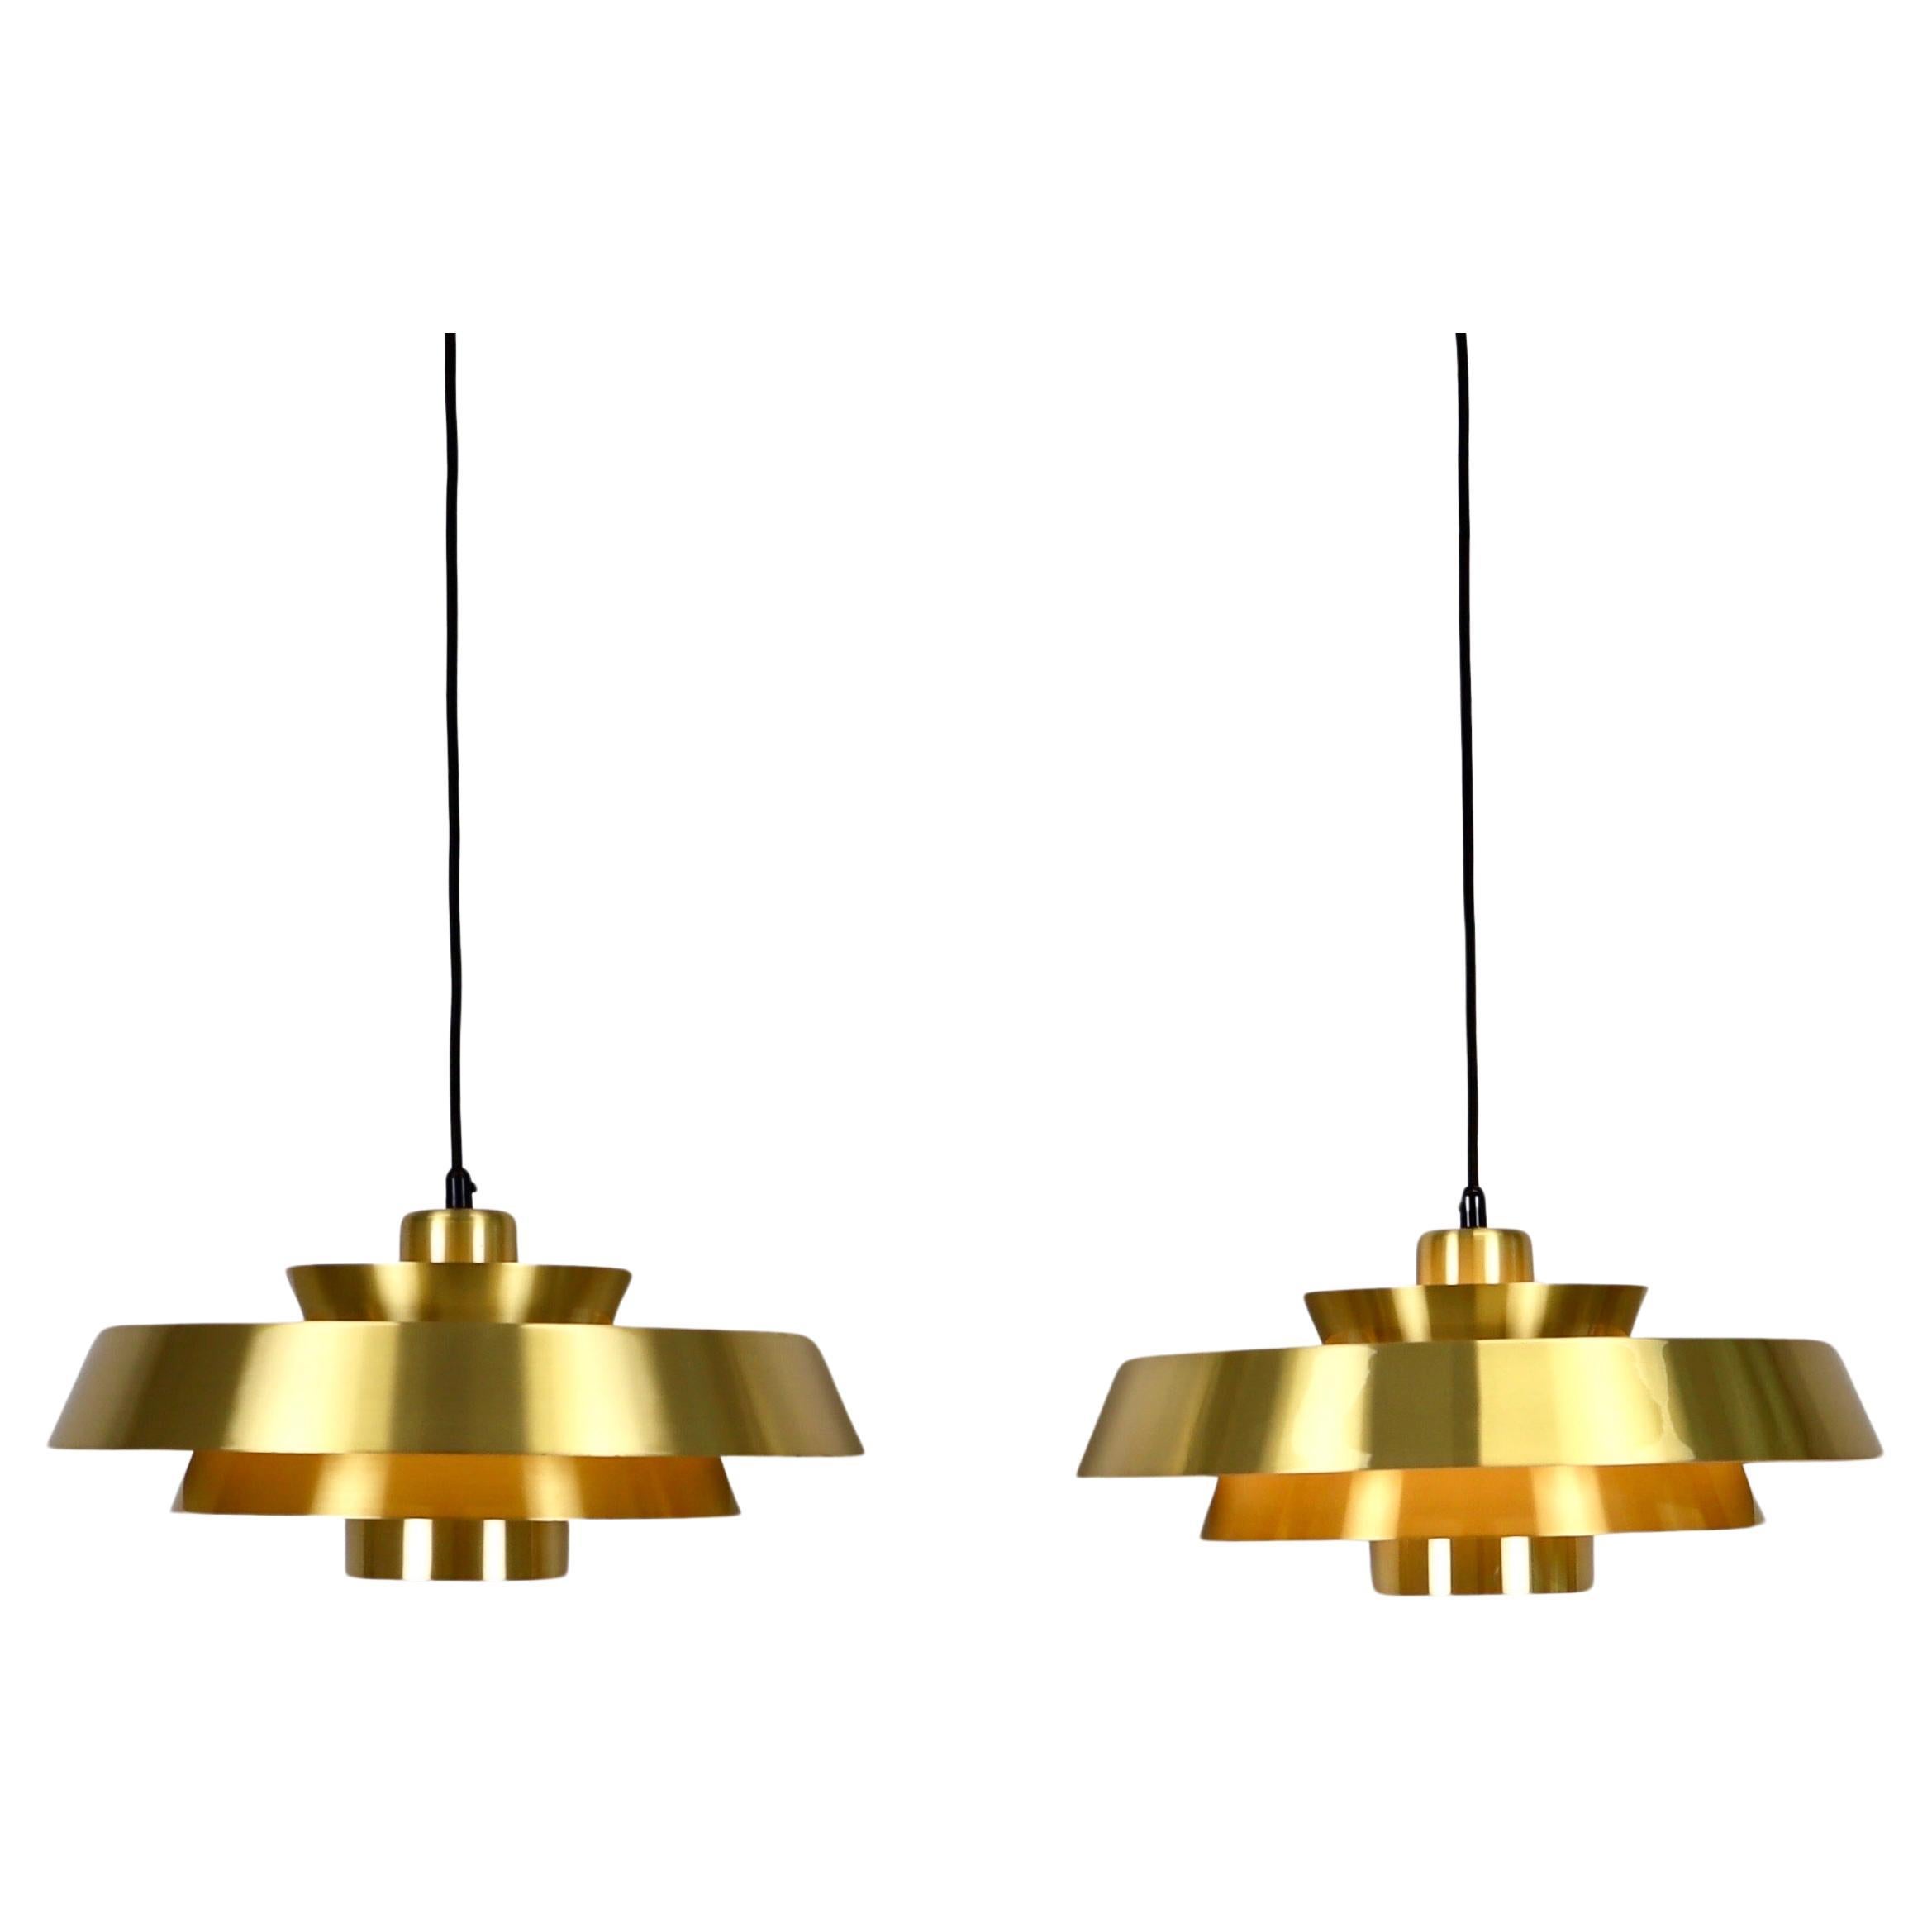 Set of Brass Pendant Lights by Jo Hammerborg for Fog & Morup, 1960s, Denmark